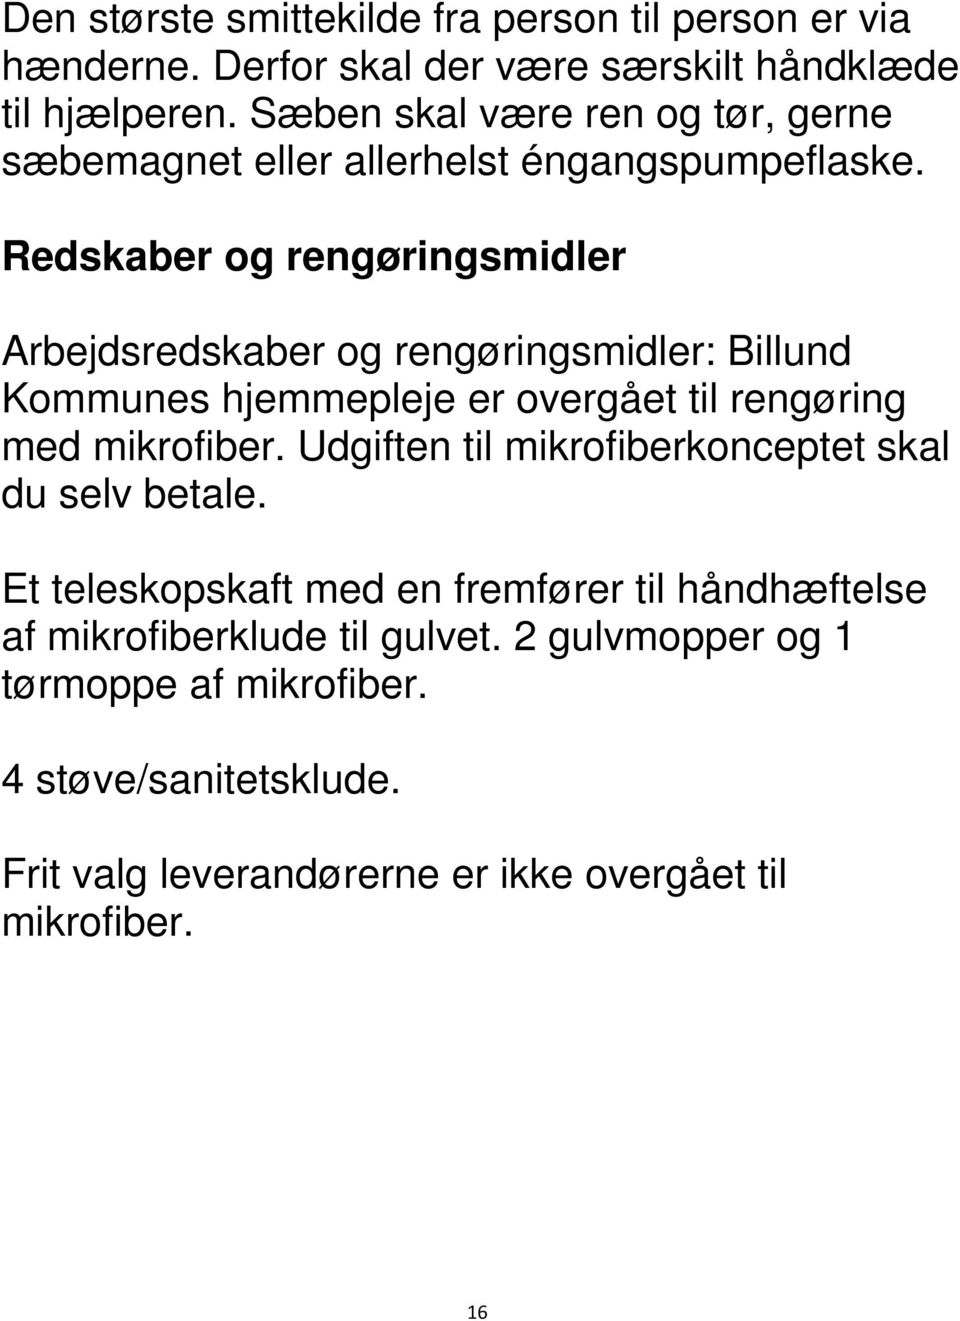 Redskaber og rengøringsmidler Arbejdsredskaber og rengøringsmidler: Billund Kommunes hjemmepleje er overgået til rengøring med mikrofiber.